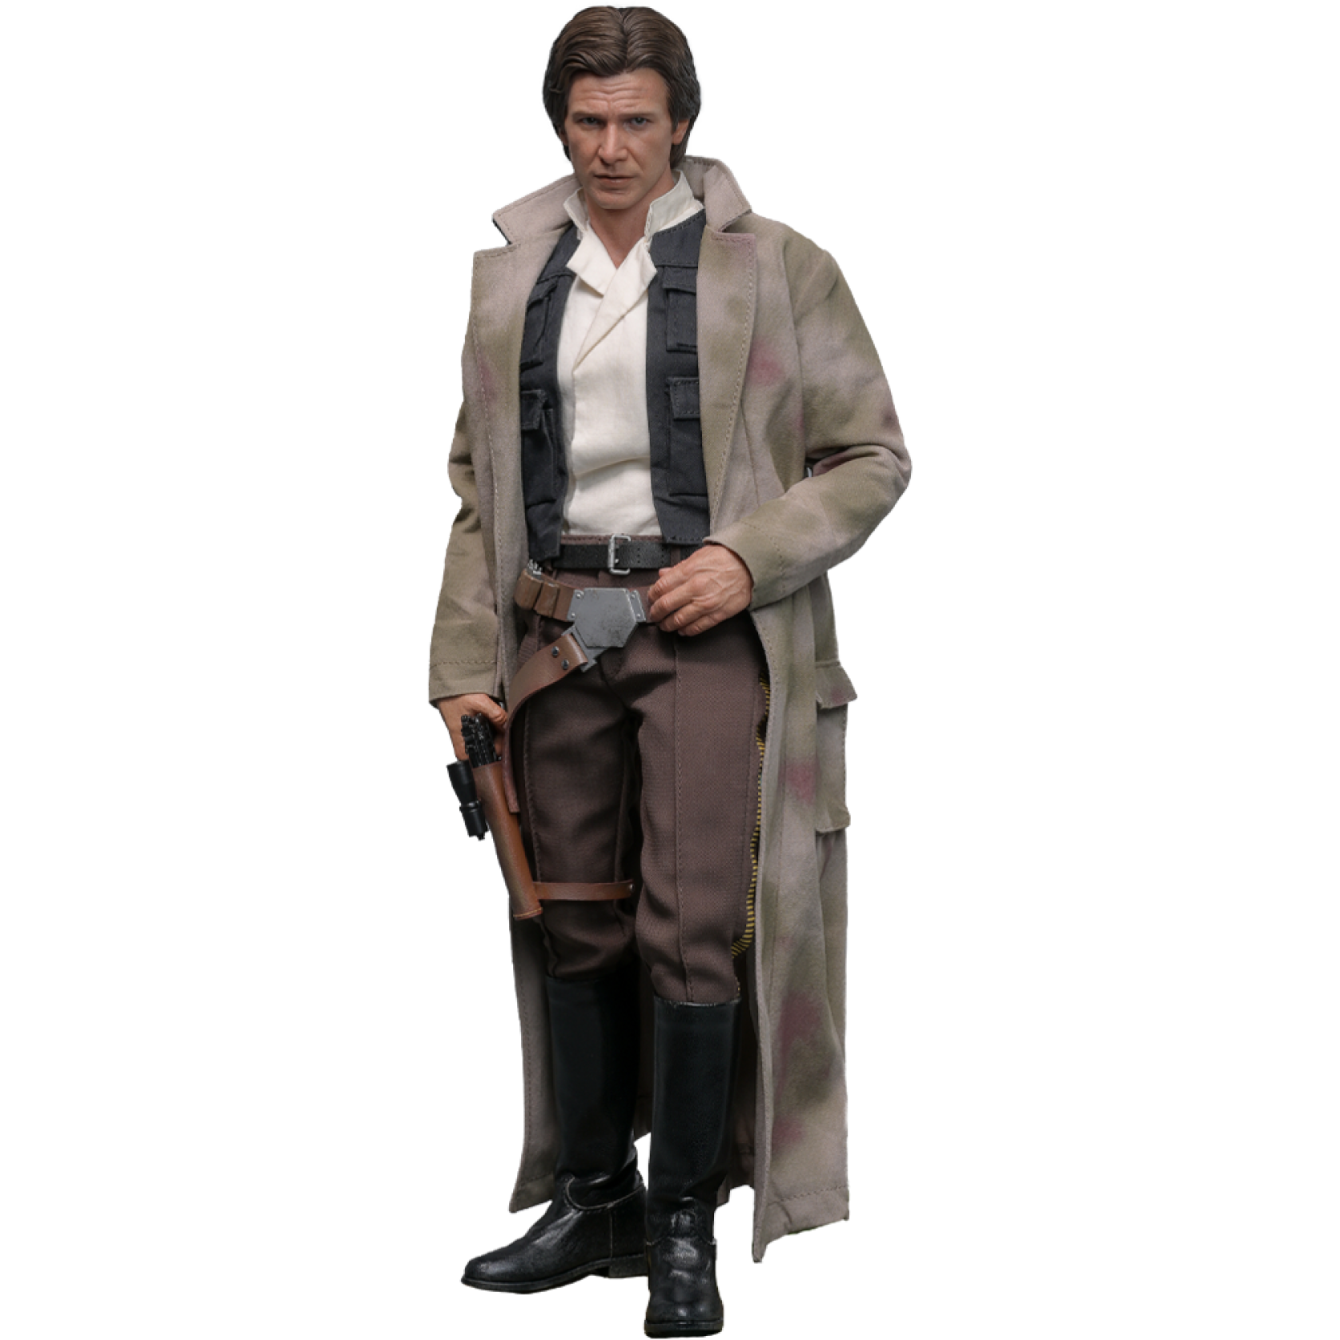 PRE-ORDER Han Solo™ Sixth Scale Figure